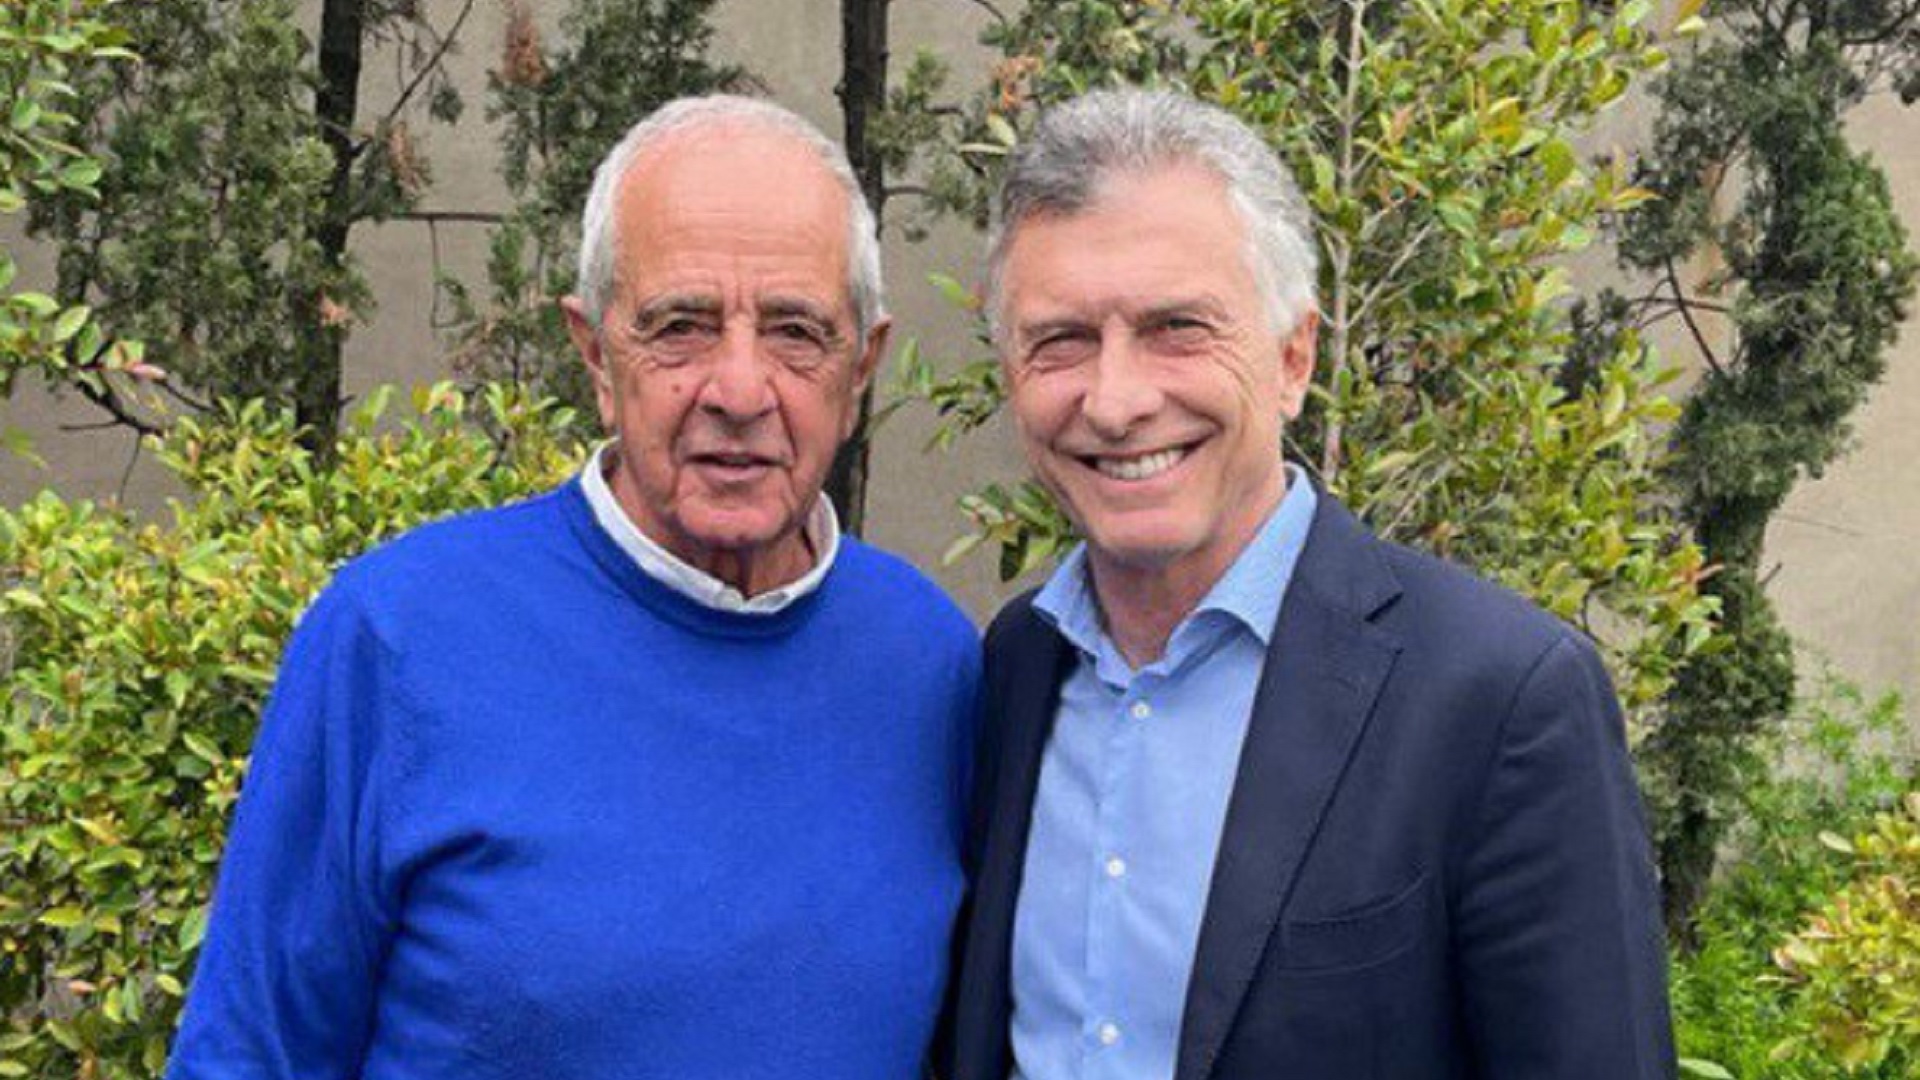 Sugestiva foto de Mauricio Macri junto a Rodolfo D’Onofrio: “Hay mucho por hacer trabajando juntos” 